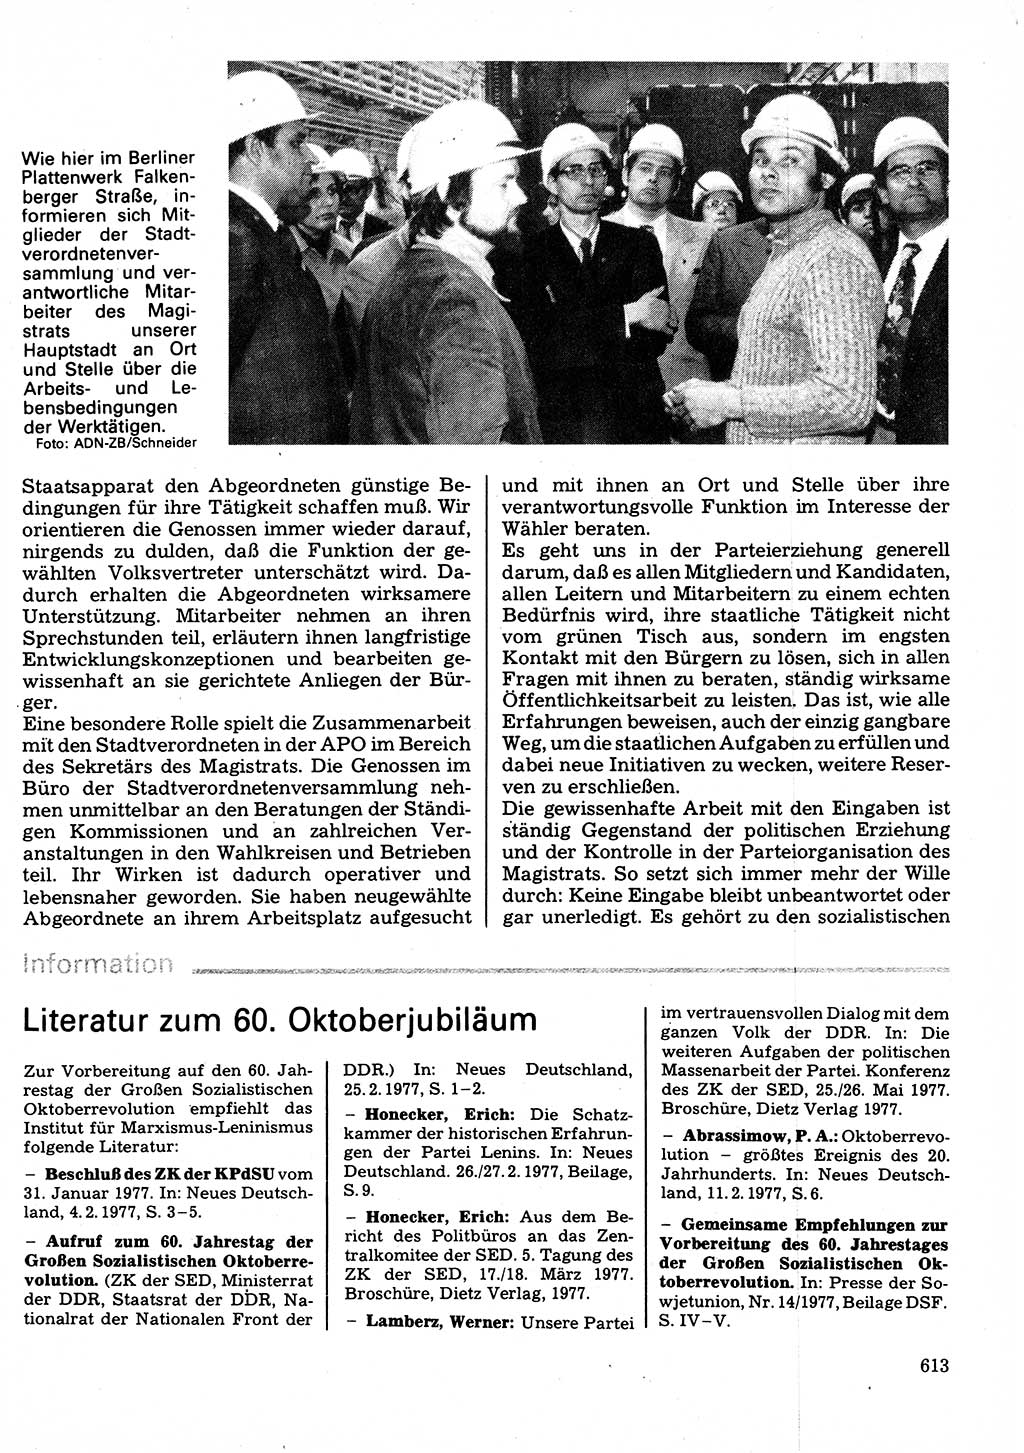 Neuer Weg (NW), Organ des Zentralkomitees (ZK) der SED (Sozialistische Einheitspartei Deutschlands) für Fragen des Parteilebens, 32. Jahrgang [Deutsche Demokratische Republik (DDR)] 1977, Seite 613 (NW ZK SED DDR 1977, S. 613)